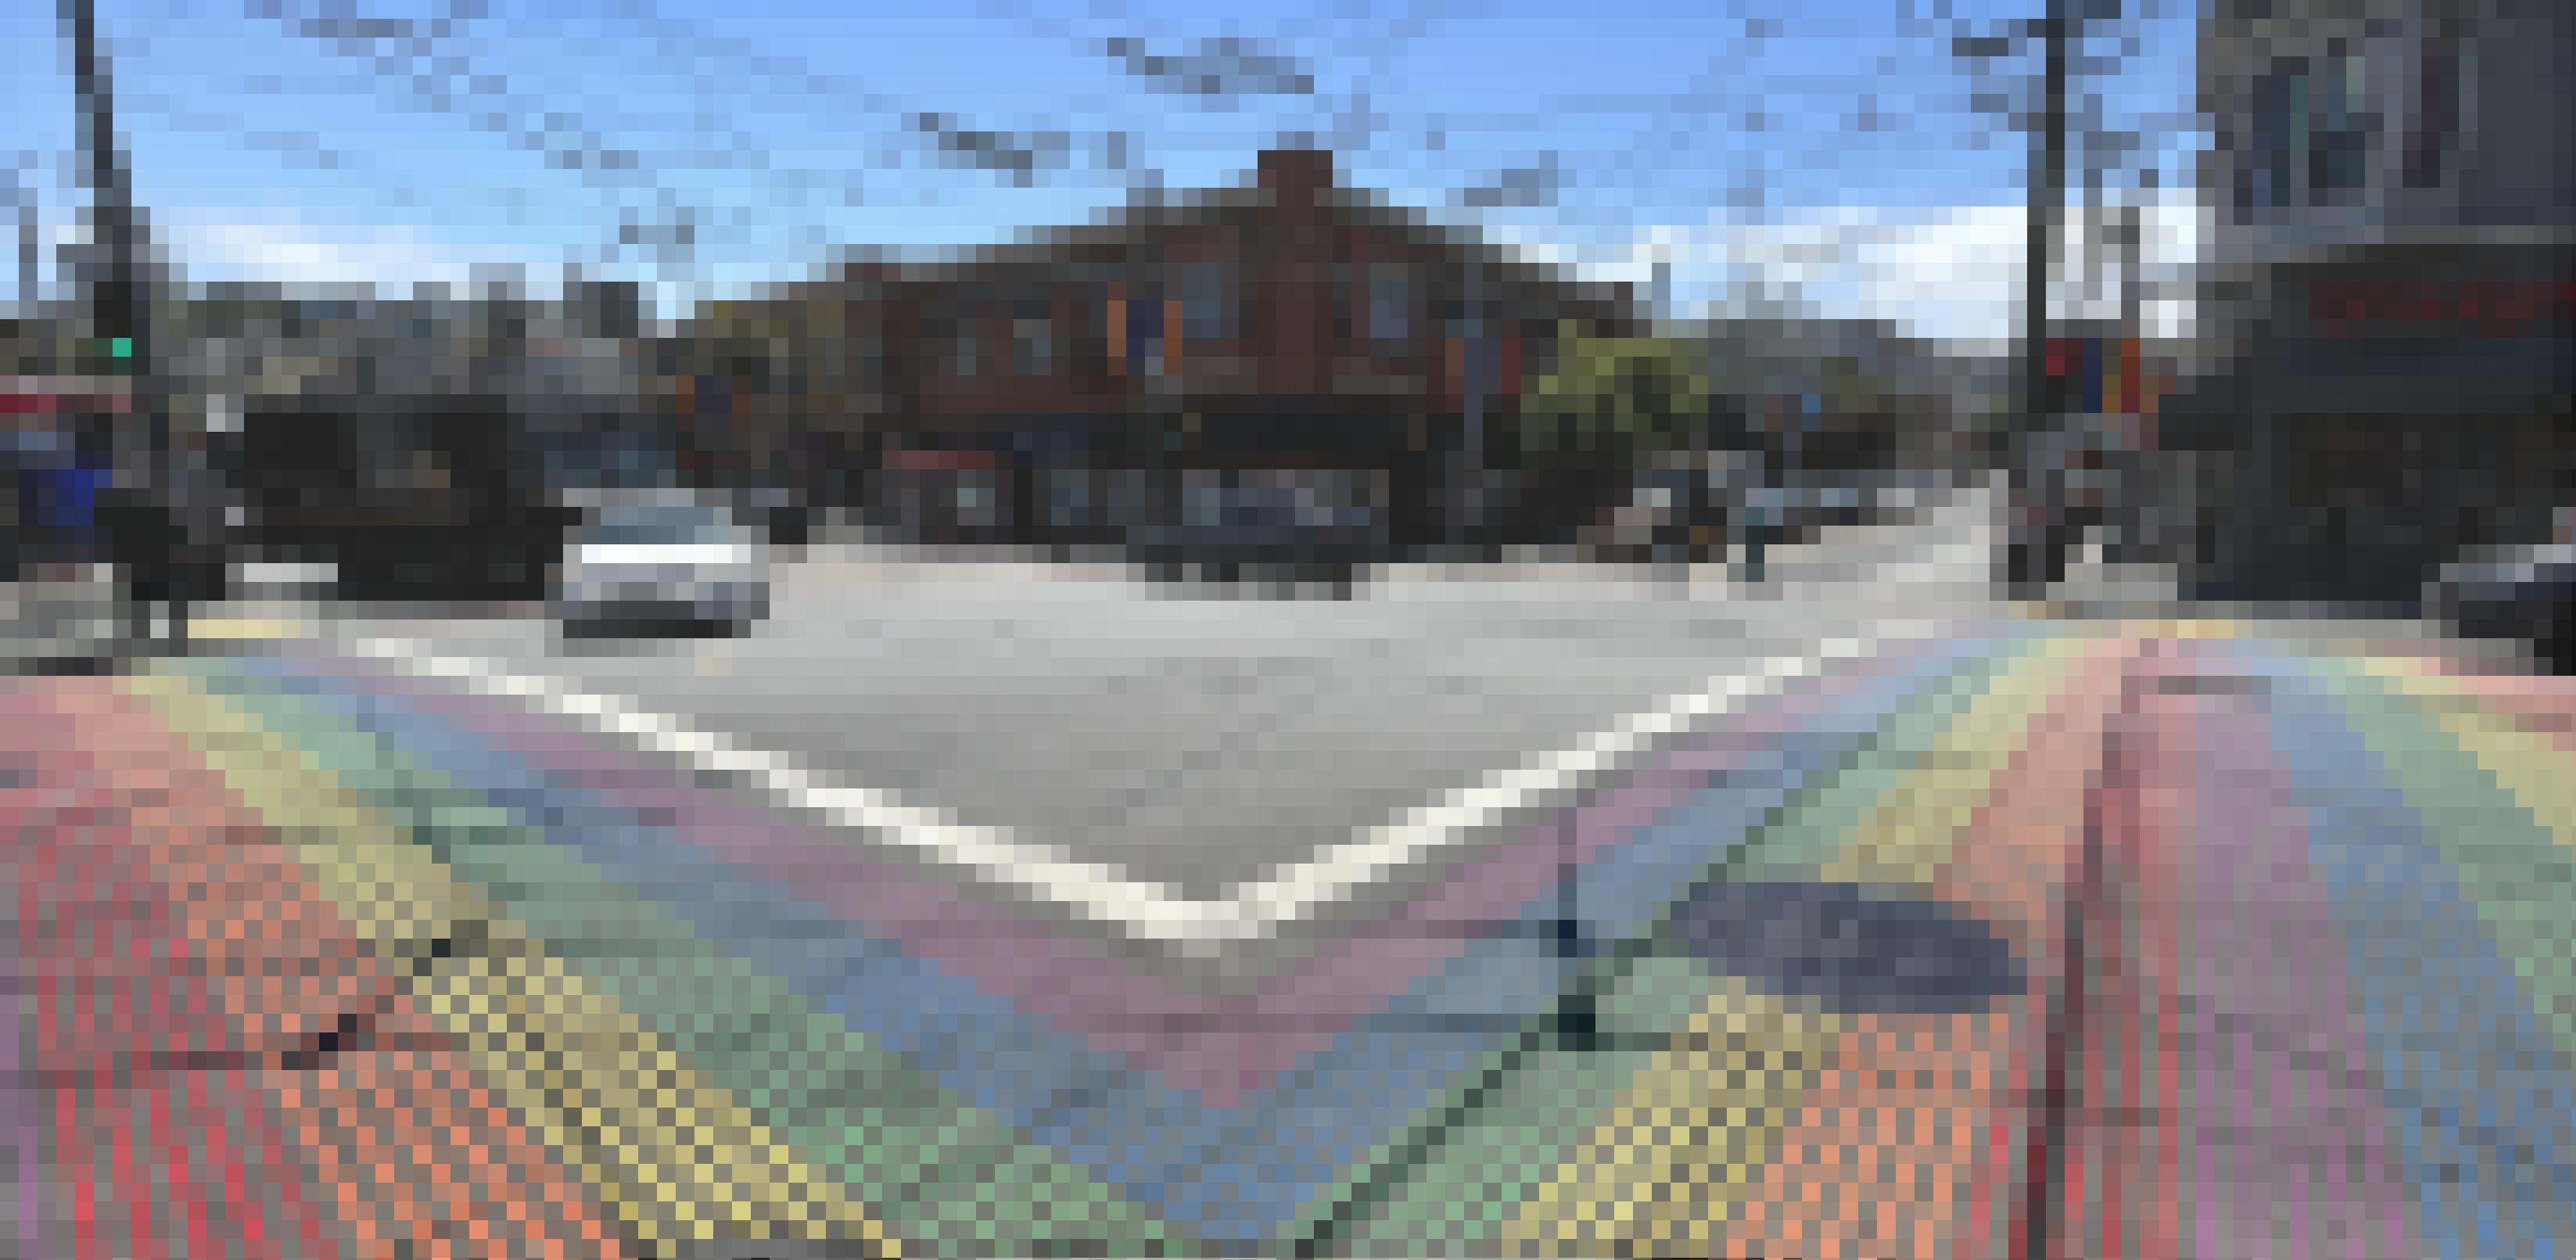 Straßenkreuzung in San Francisco mit Regenbogen-Zebrastreifen